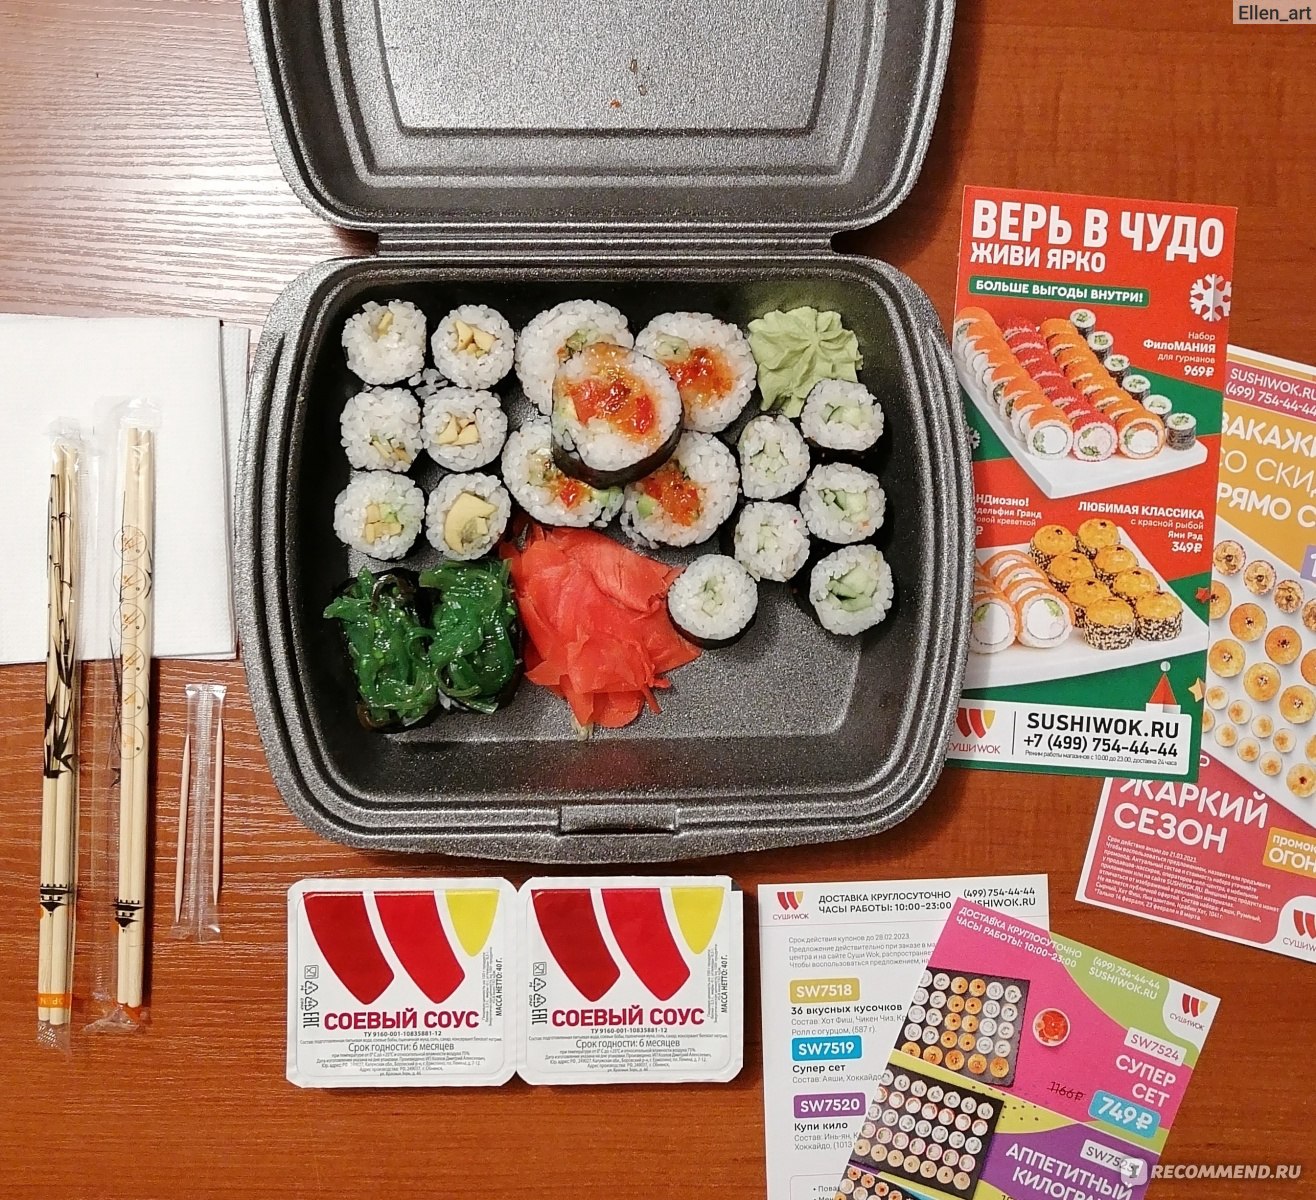 Вкусный суши москва отзывы фото 79